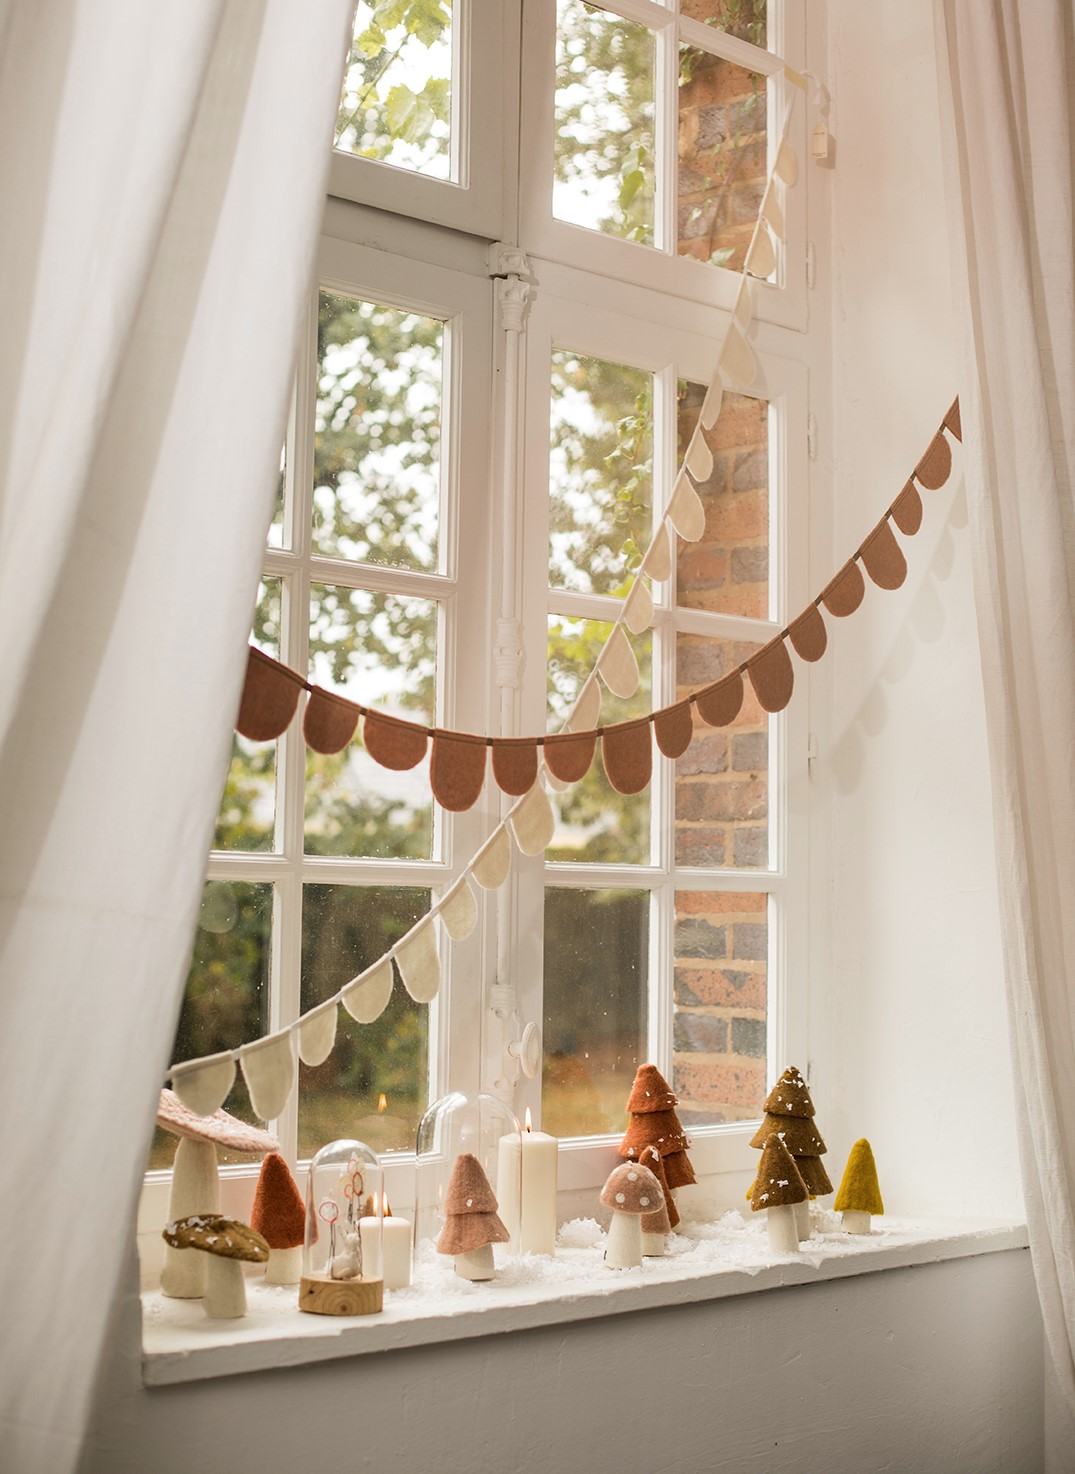 Petits objets de décoration de Noël en feutre disposés sur le rebord d'une fenêtre pour une ambiance magique